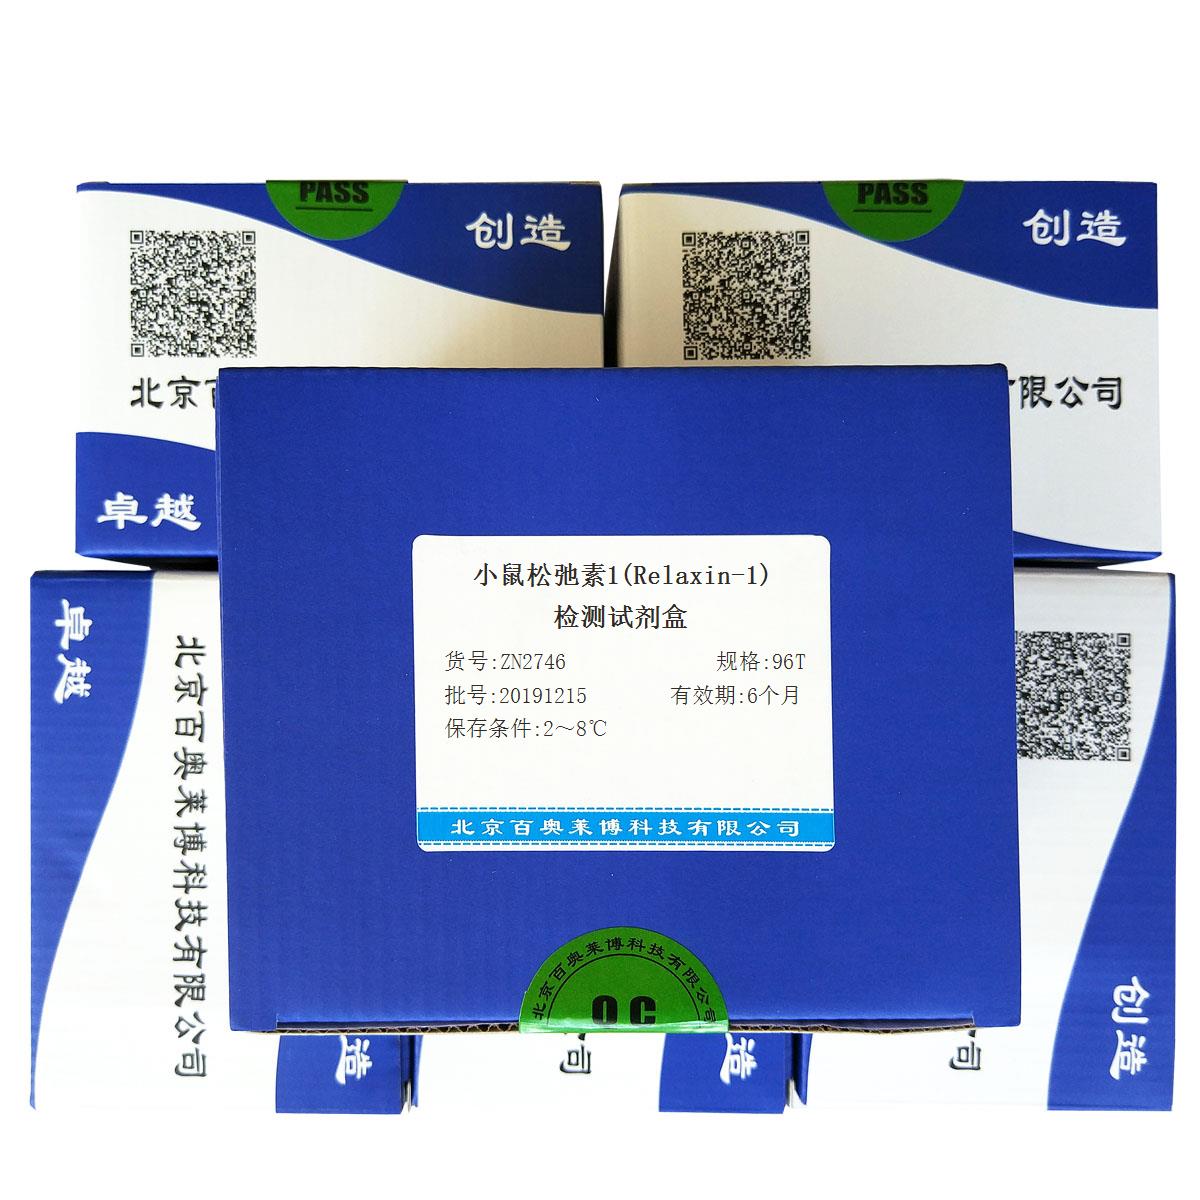 小鼠松弛素1(Relaxin-1)检测试剂盒